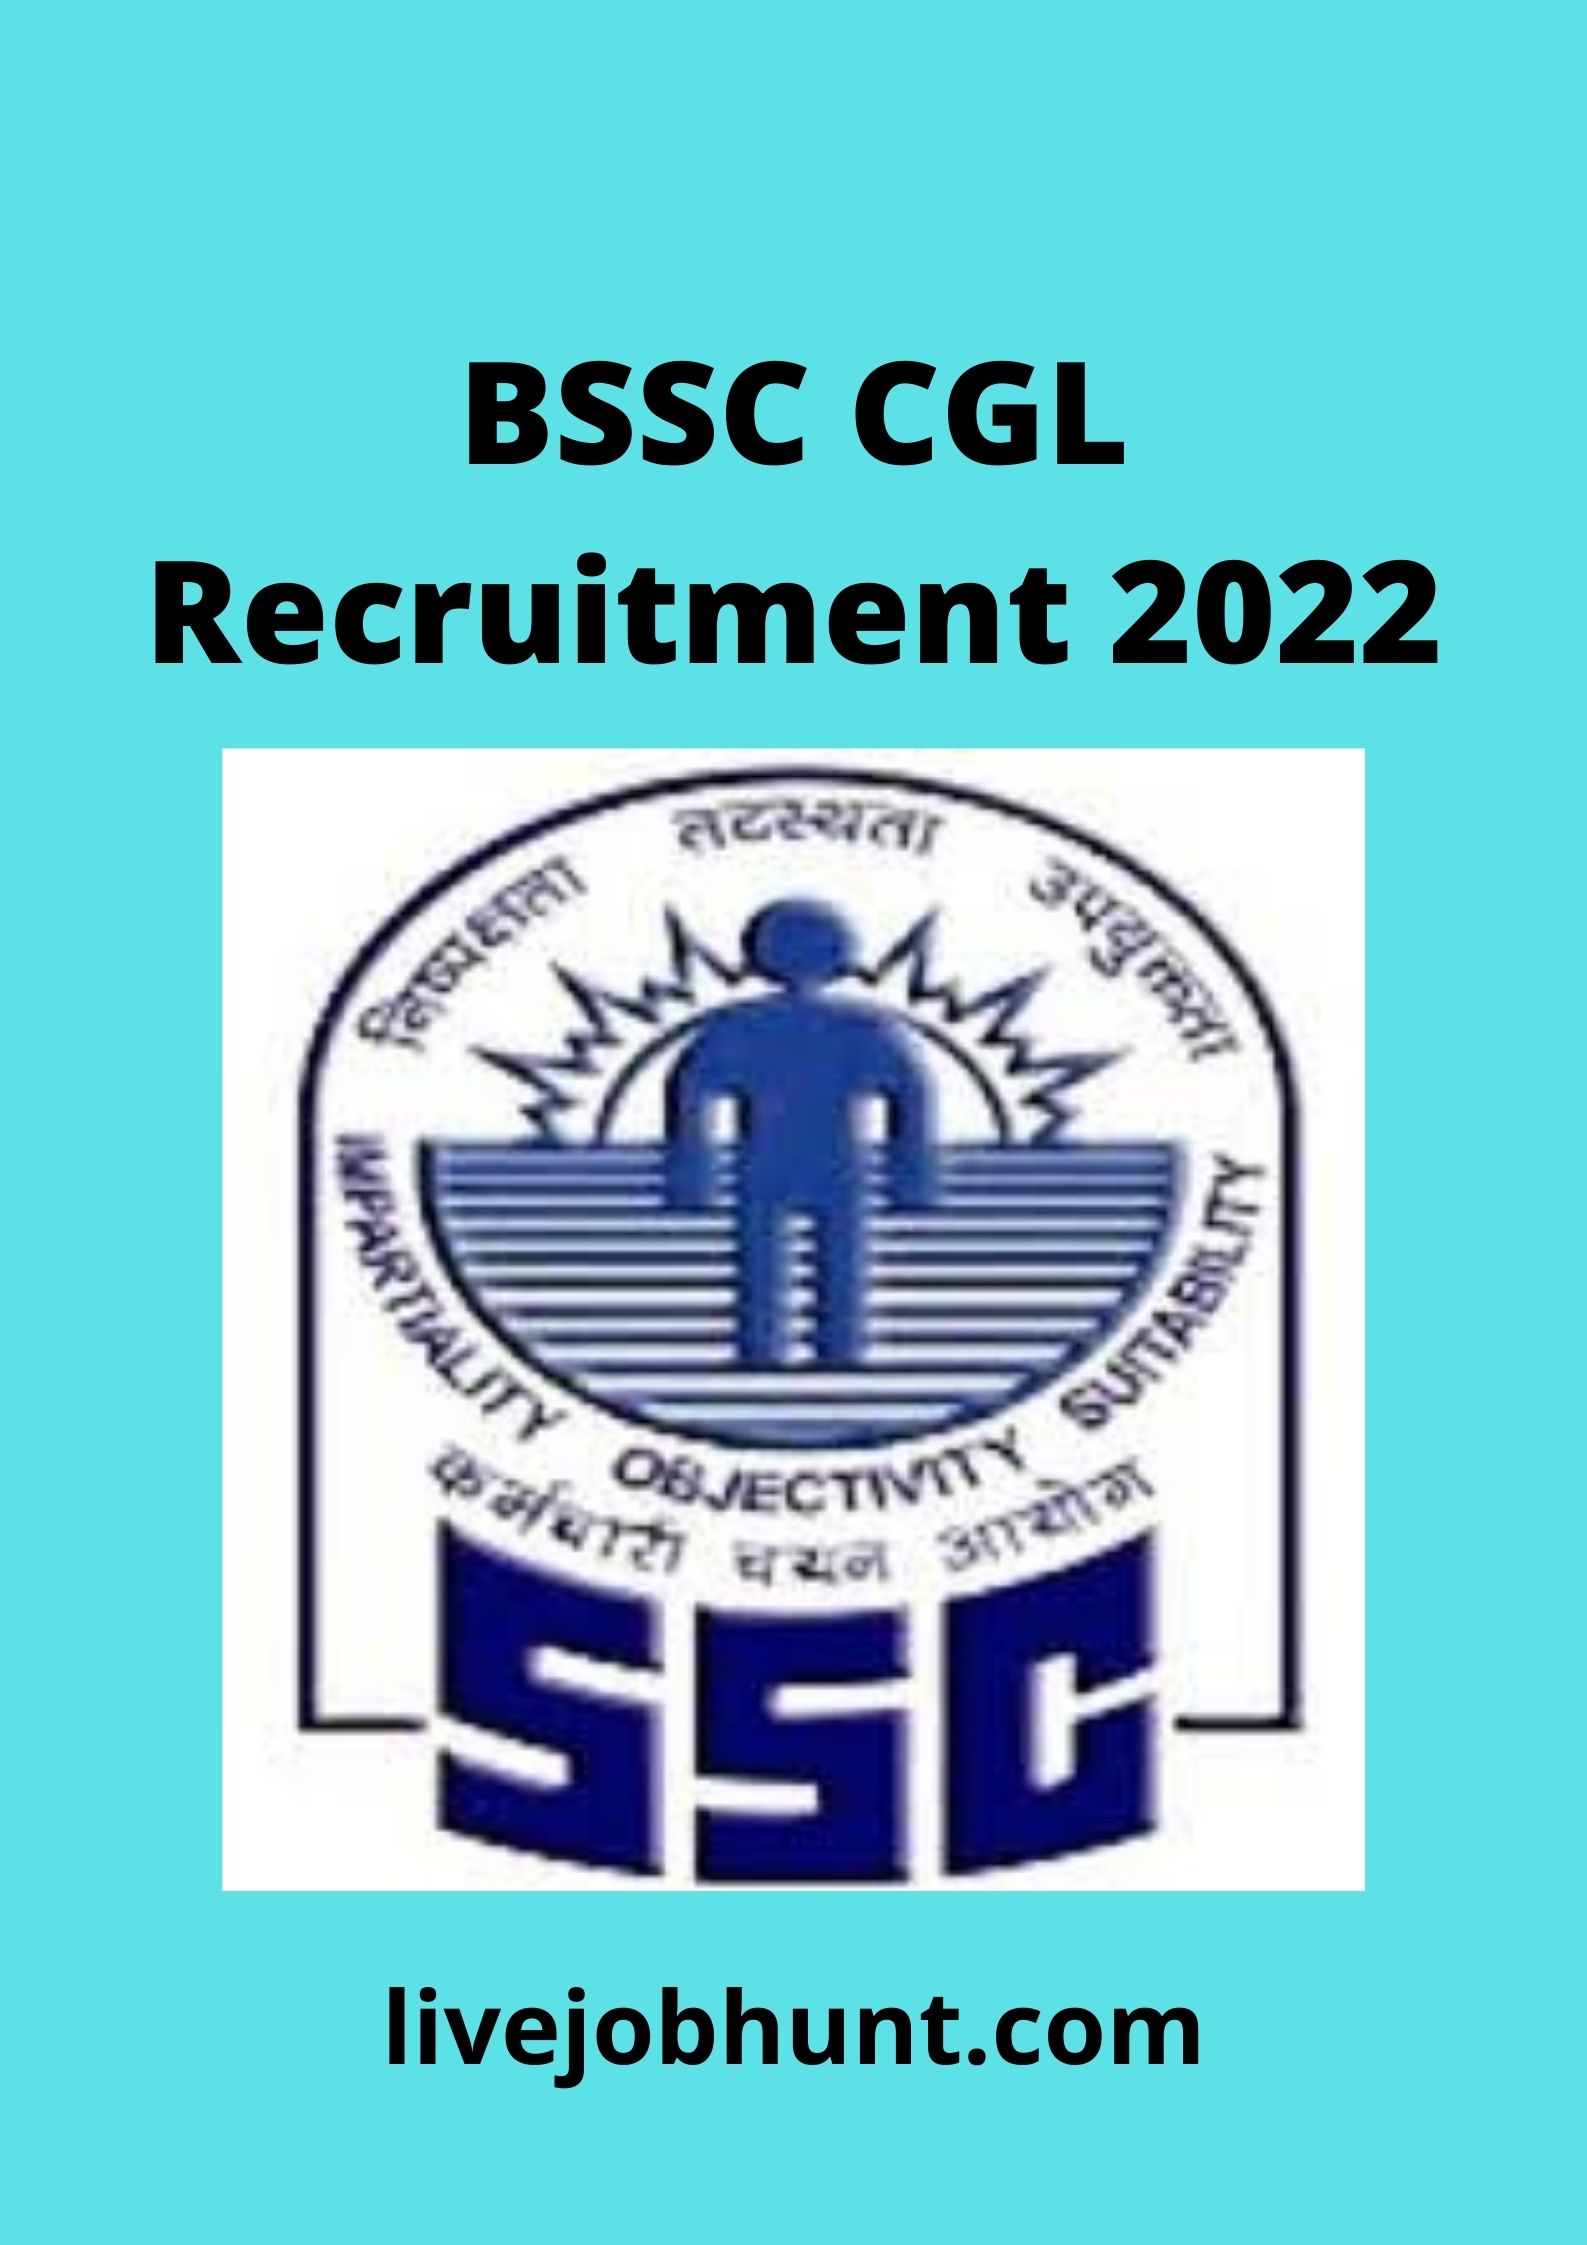  BSSC CGL Recruitment 2022